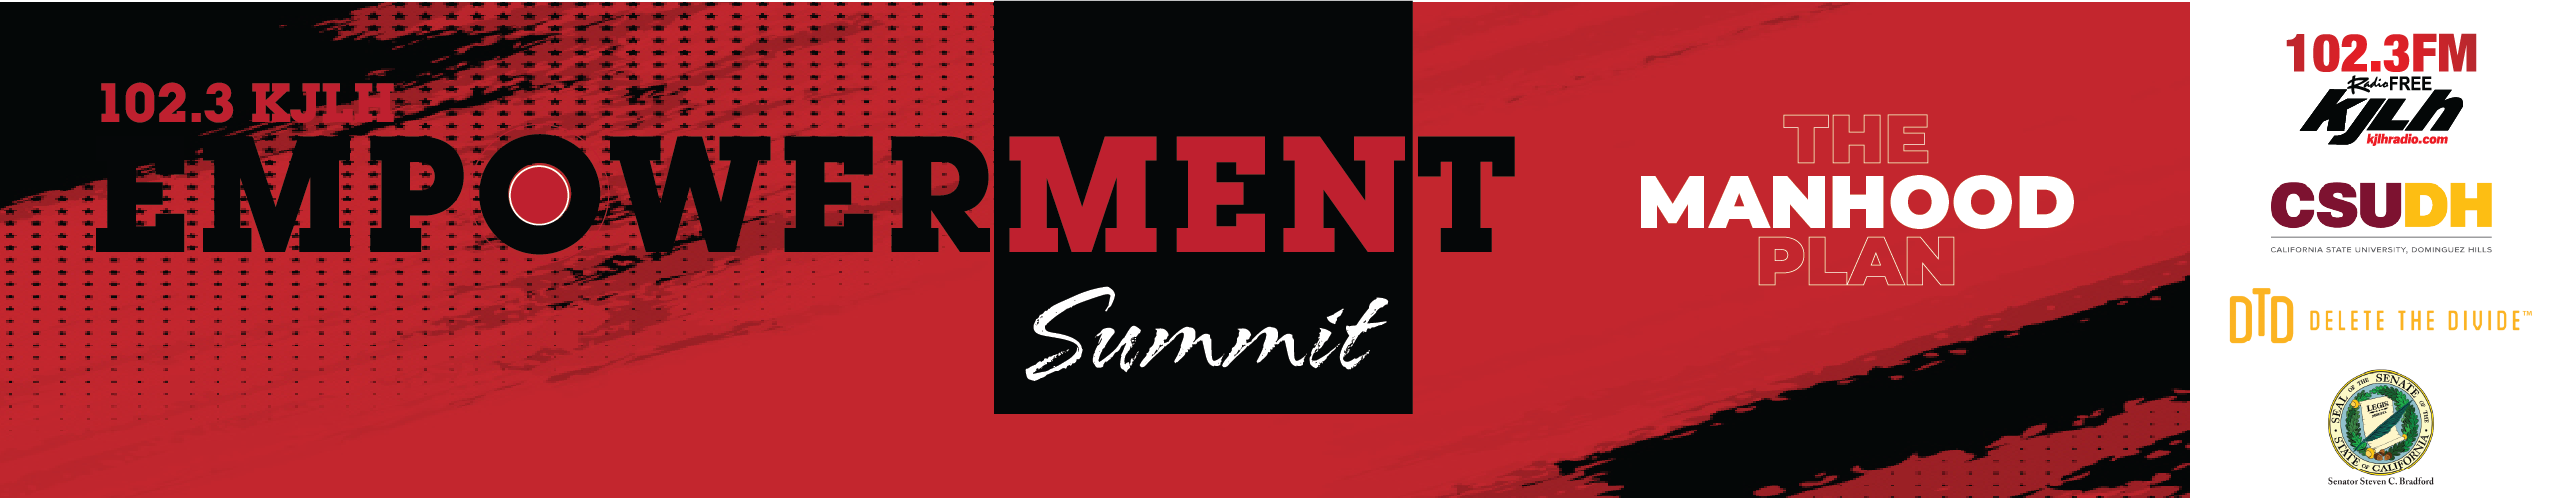 Mens Empowerment Summit